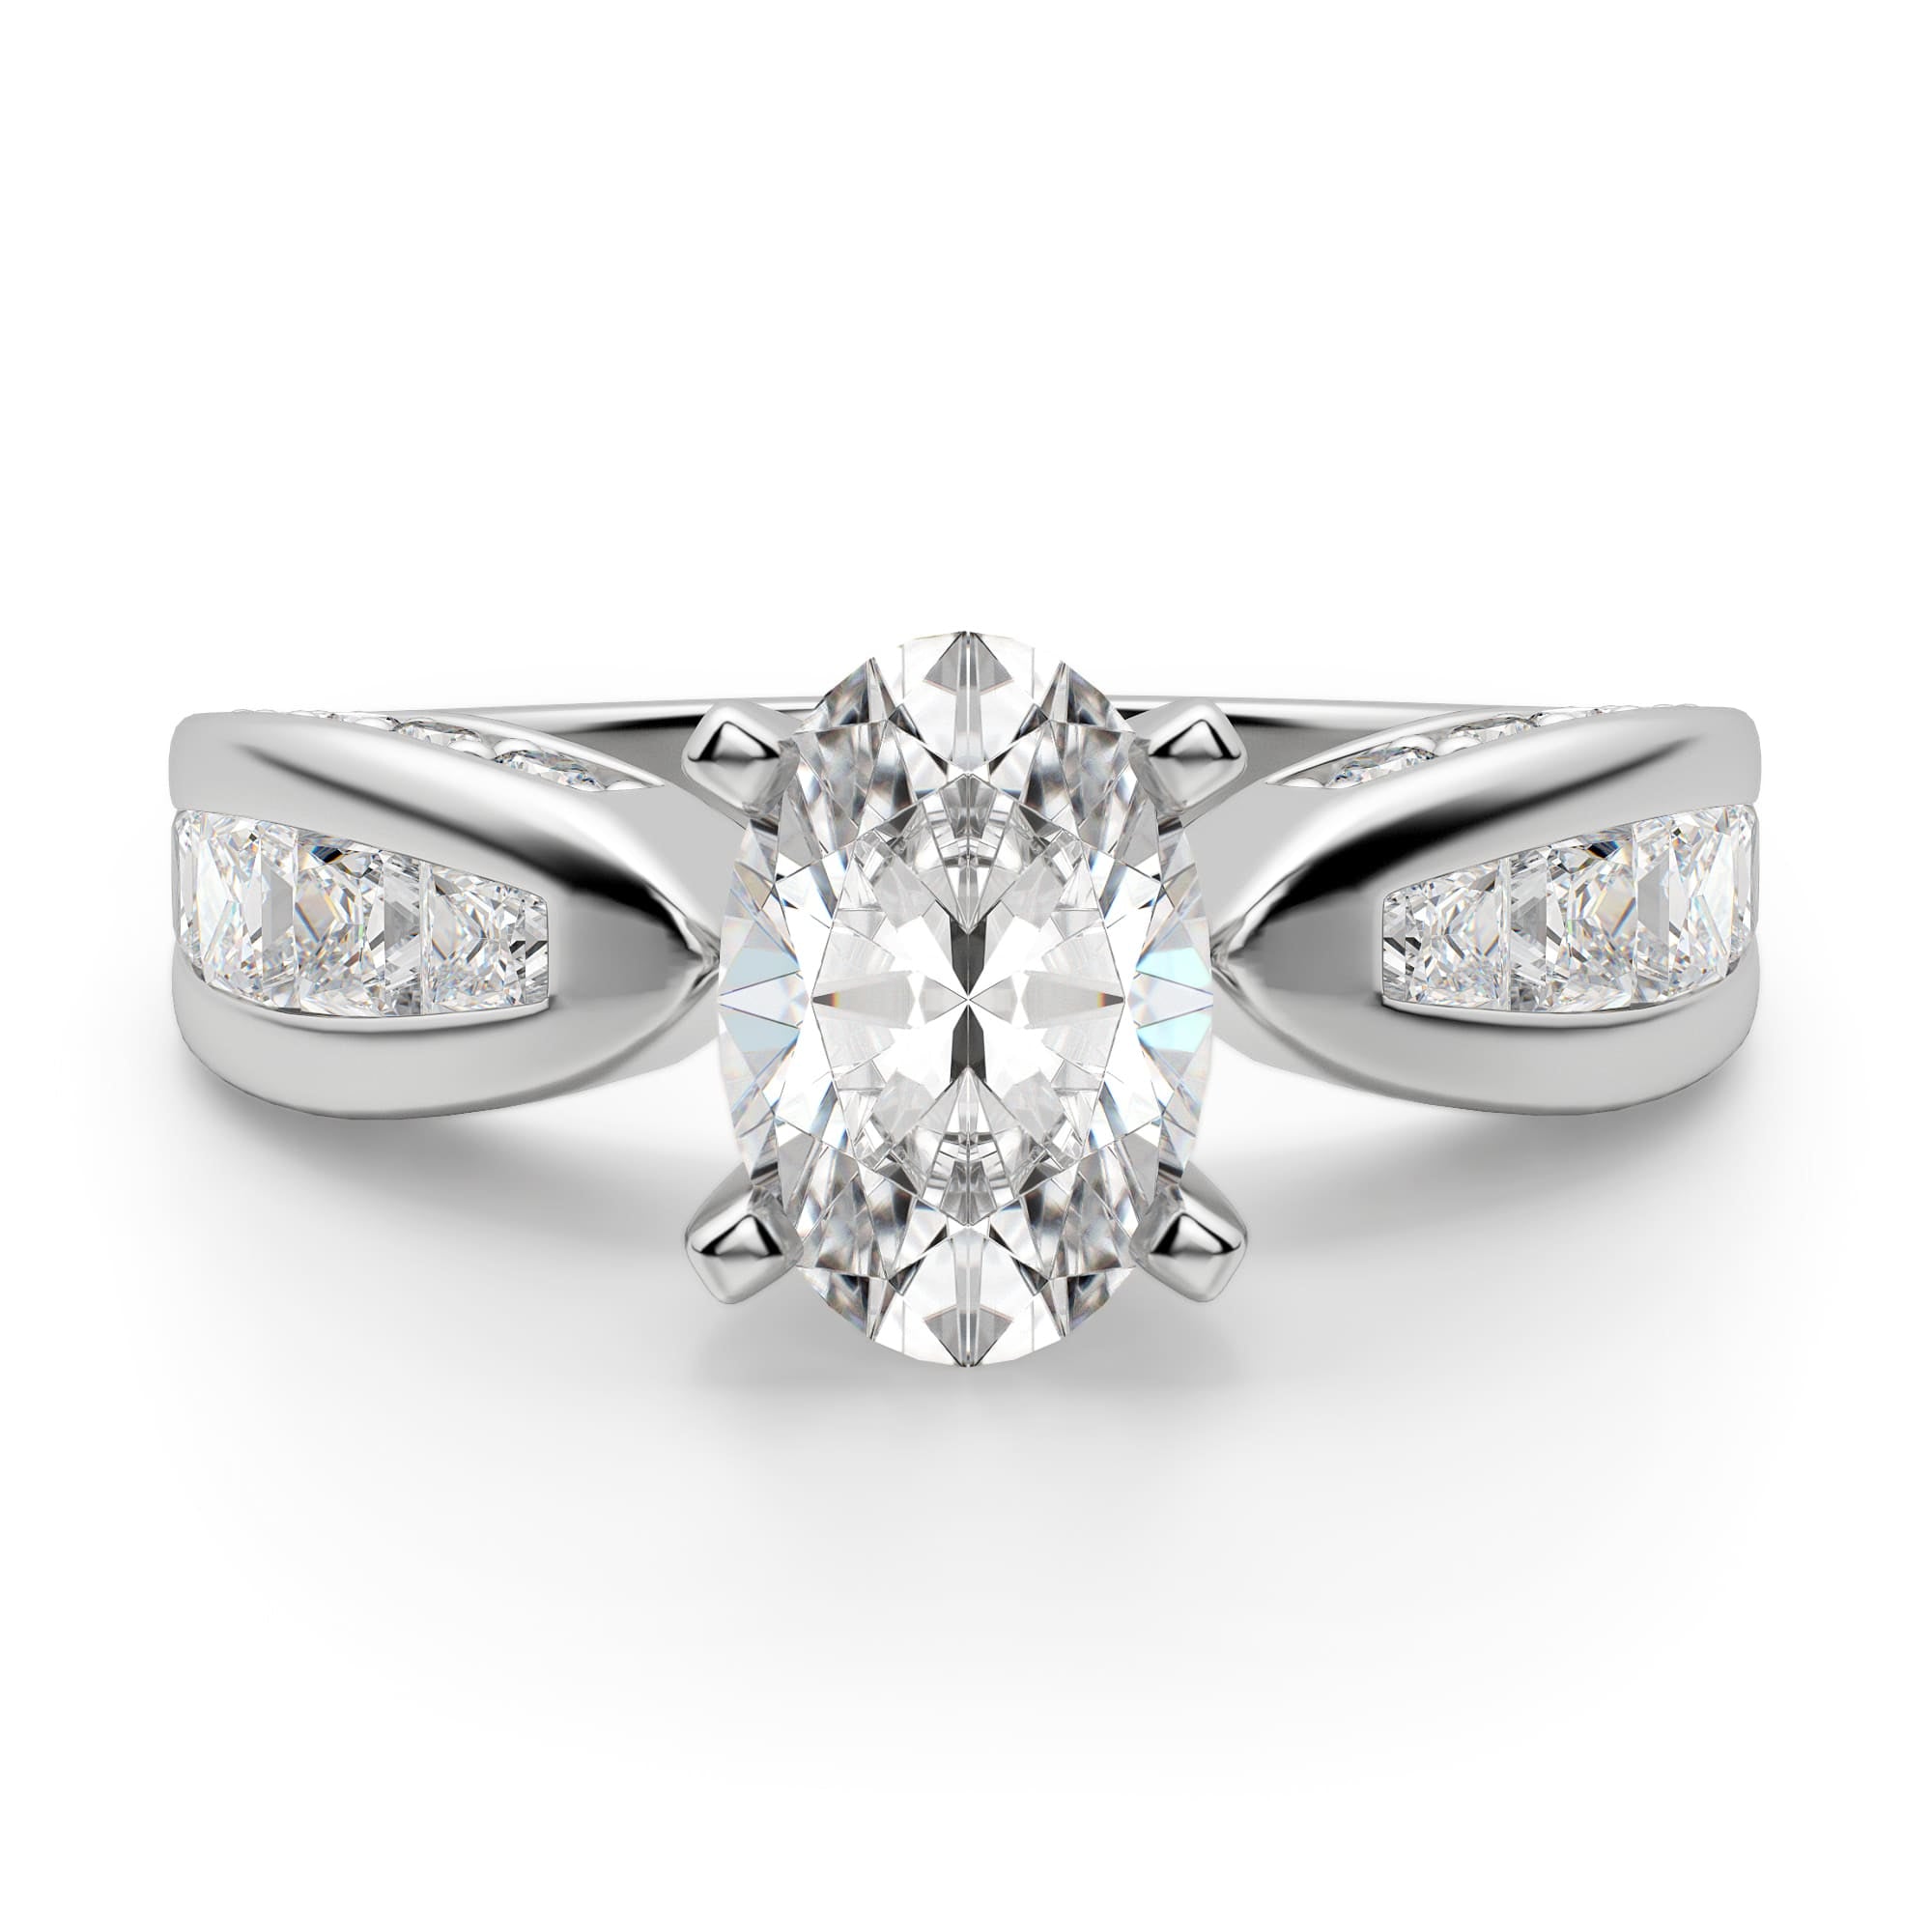 Oval Cut Art Deco Moissanite Diamond Ring for Women's